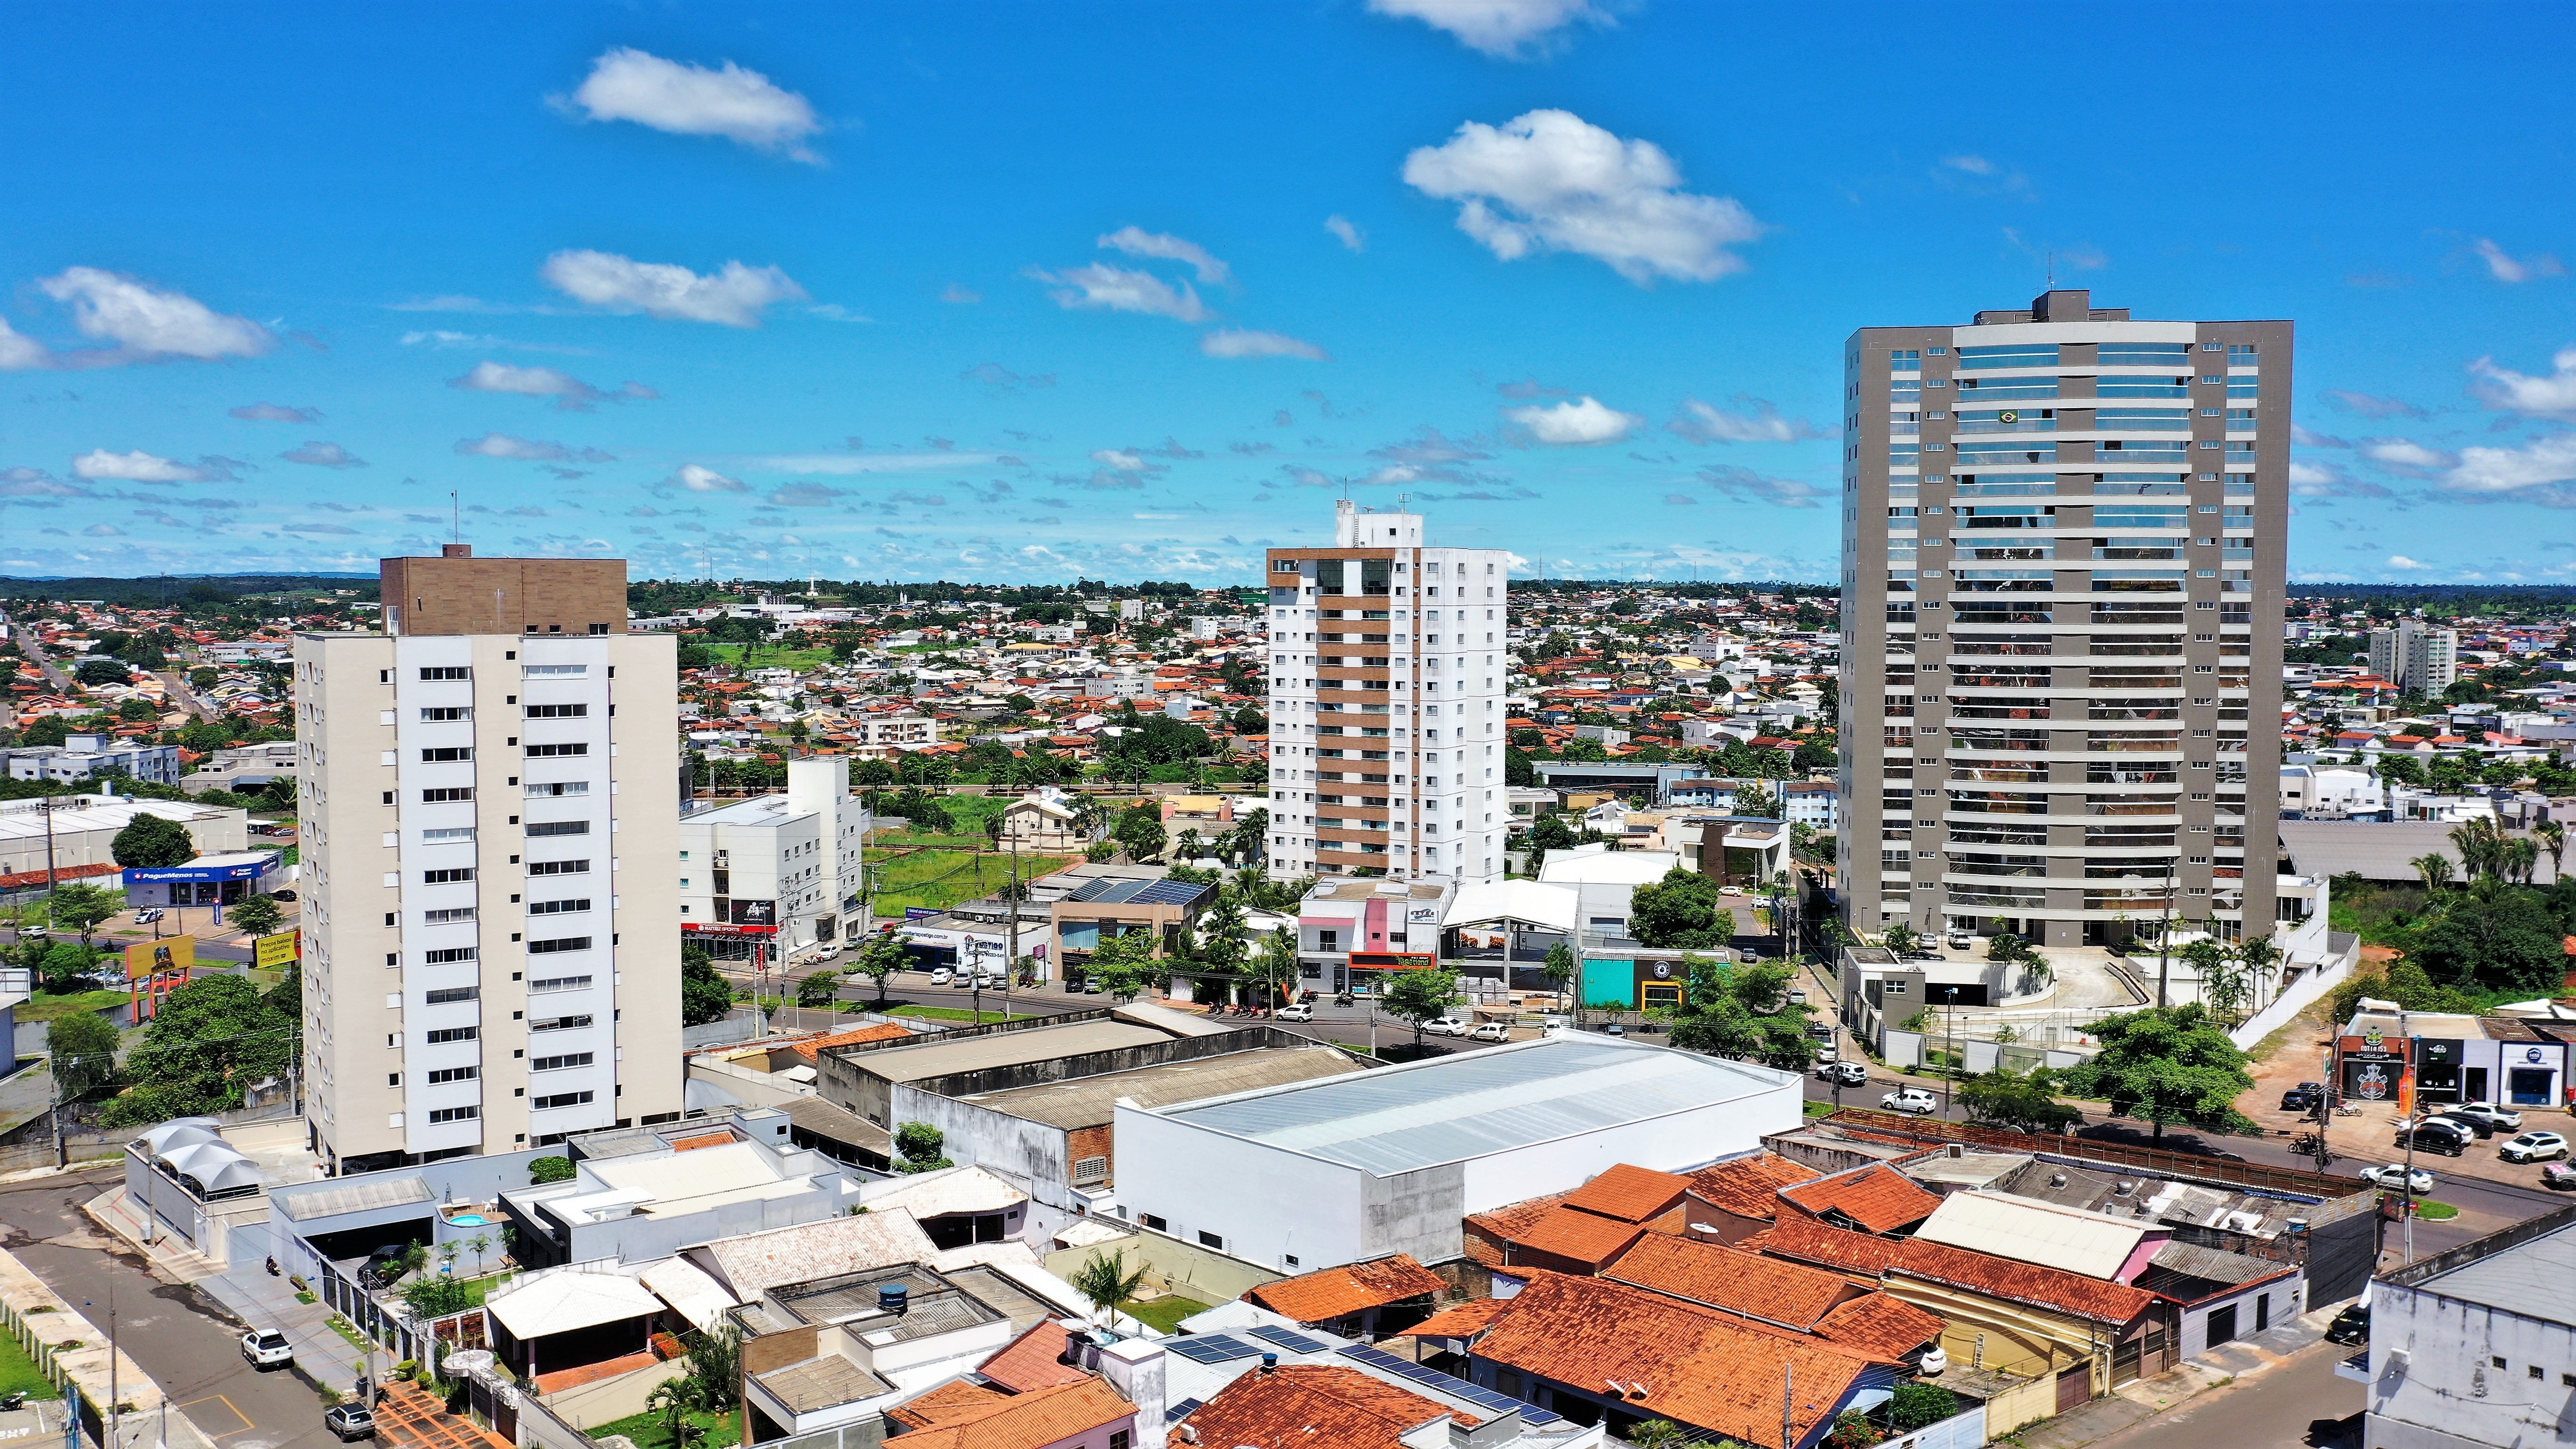 O objetivo da participação é conhecer  as startups, descobrir soluções que podem ser trazidas a Araguaína, beneficiando a população e contribuindo com o desenvolvimento da cidade